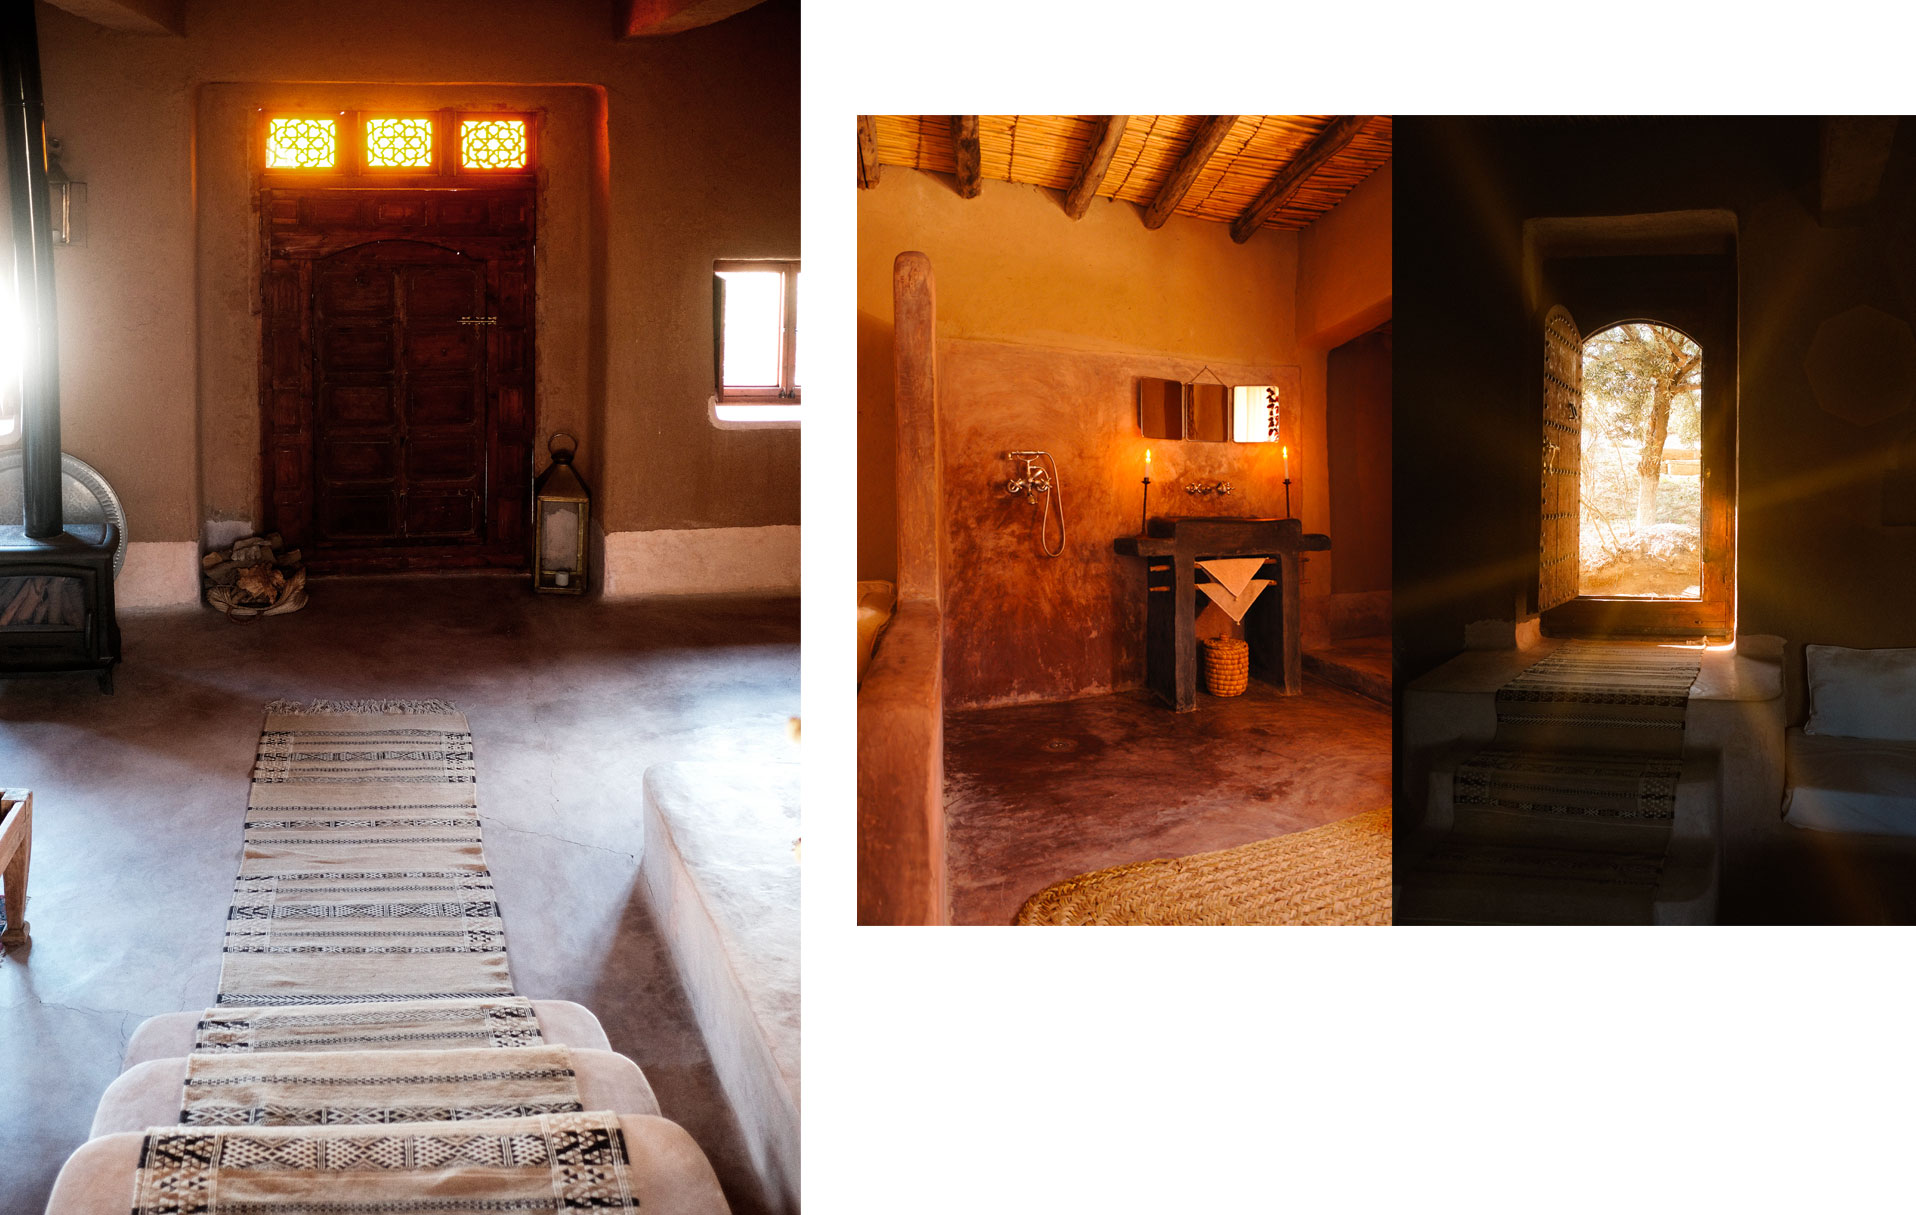 Tapis traditionnels et salles de bains privées à La Pause, Maroc.